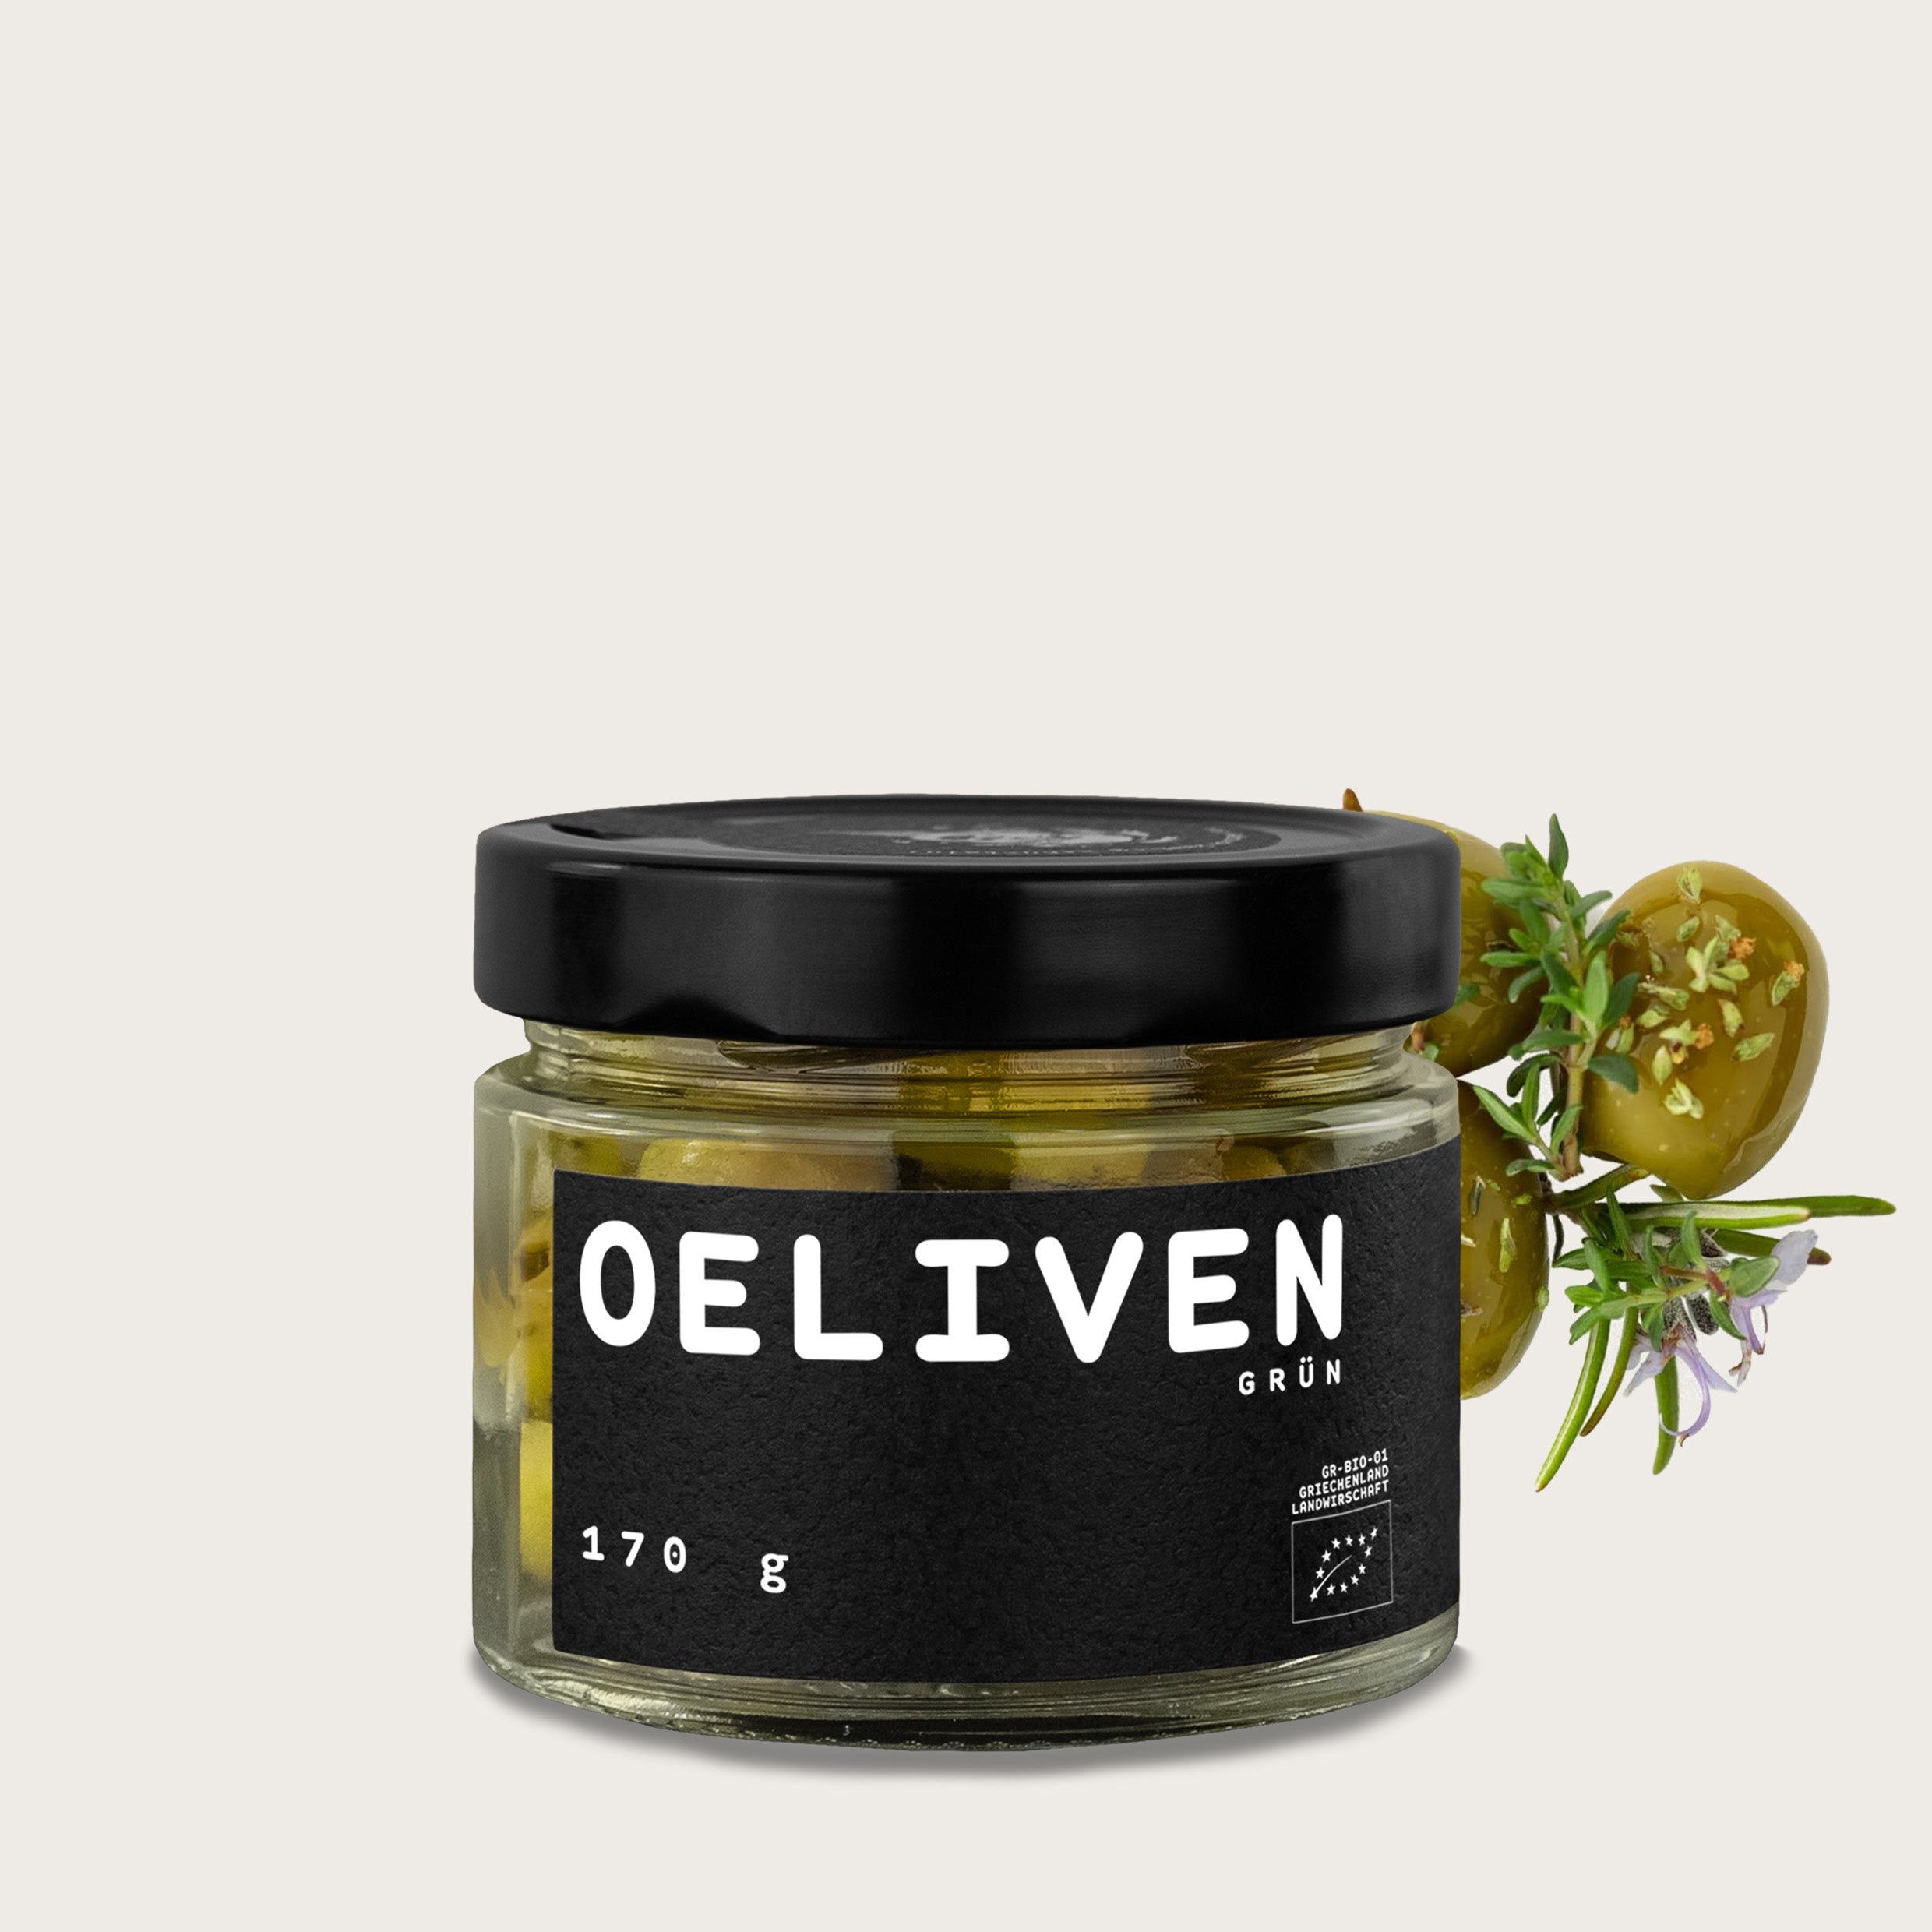 OELiven Grün 170 g - Grüne Bio Oliven mit Kräutern